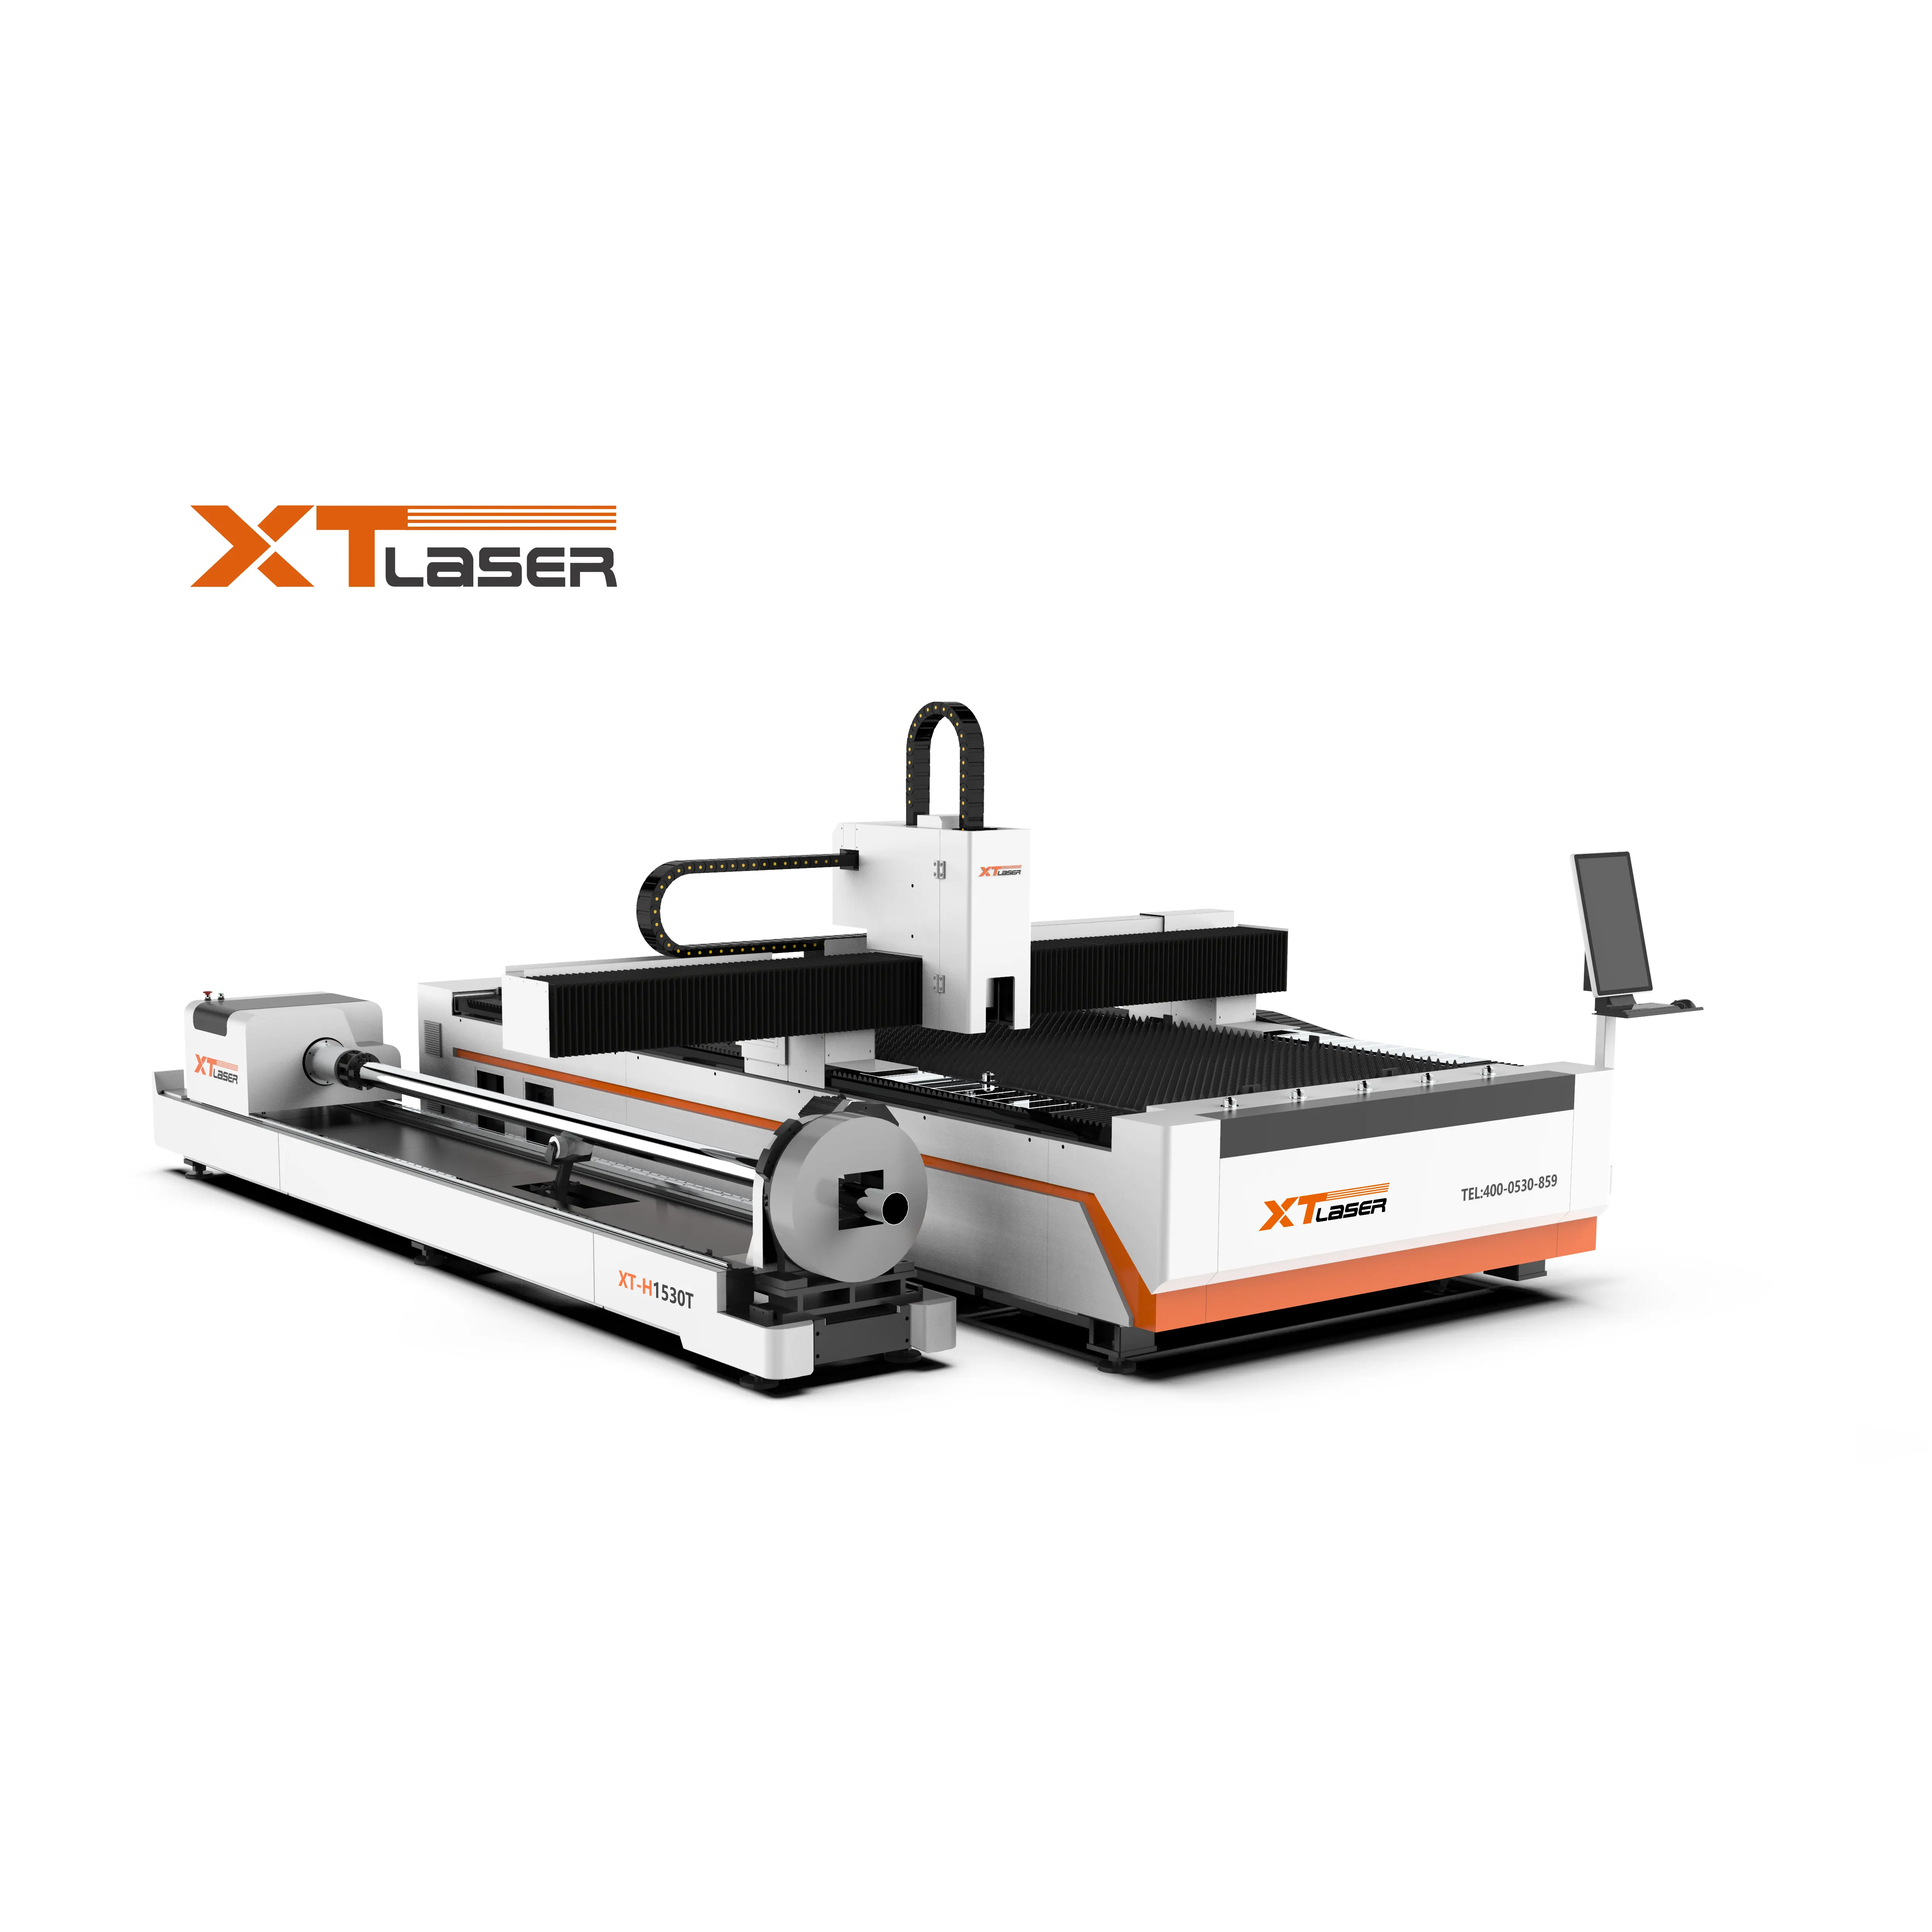 Venda quente de fábrica 1000w 1500w máquina de corte a laser de fibra CNC para metal com bom serviço pós-venda